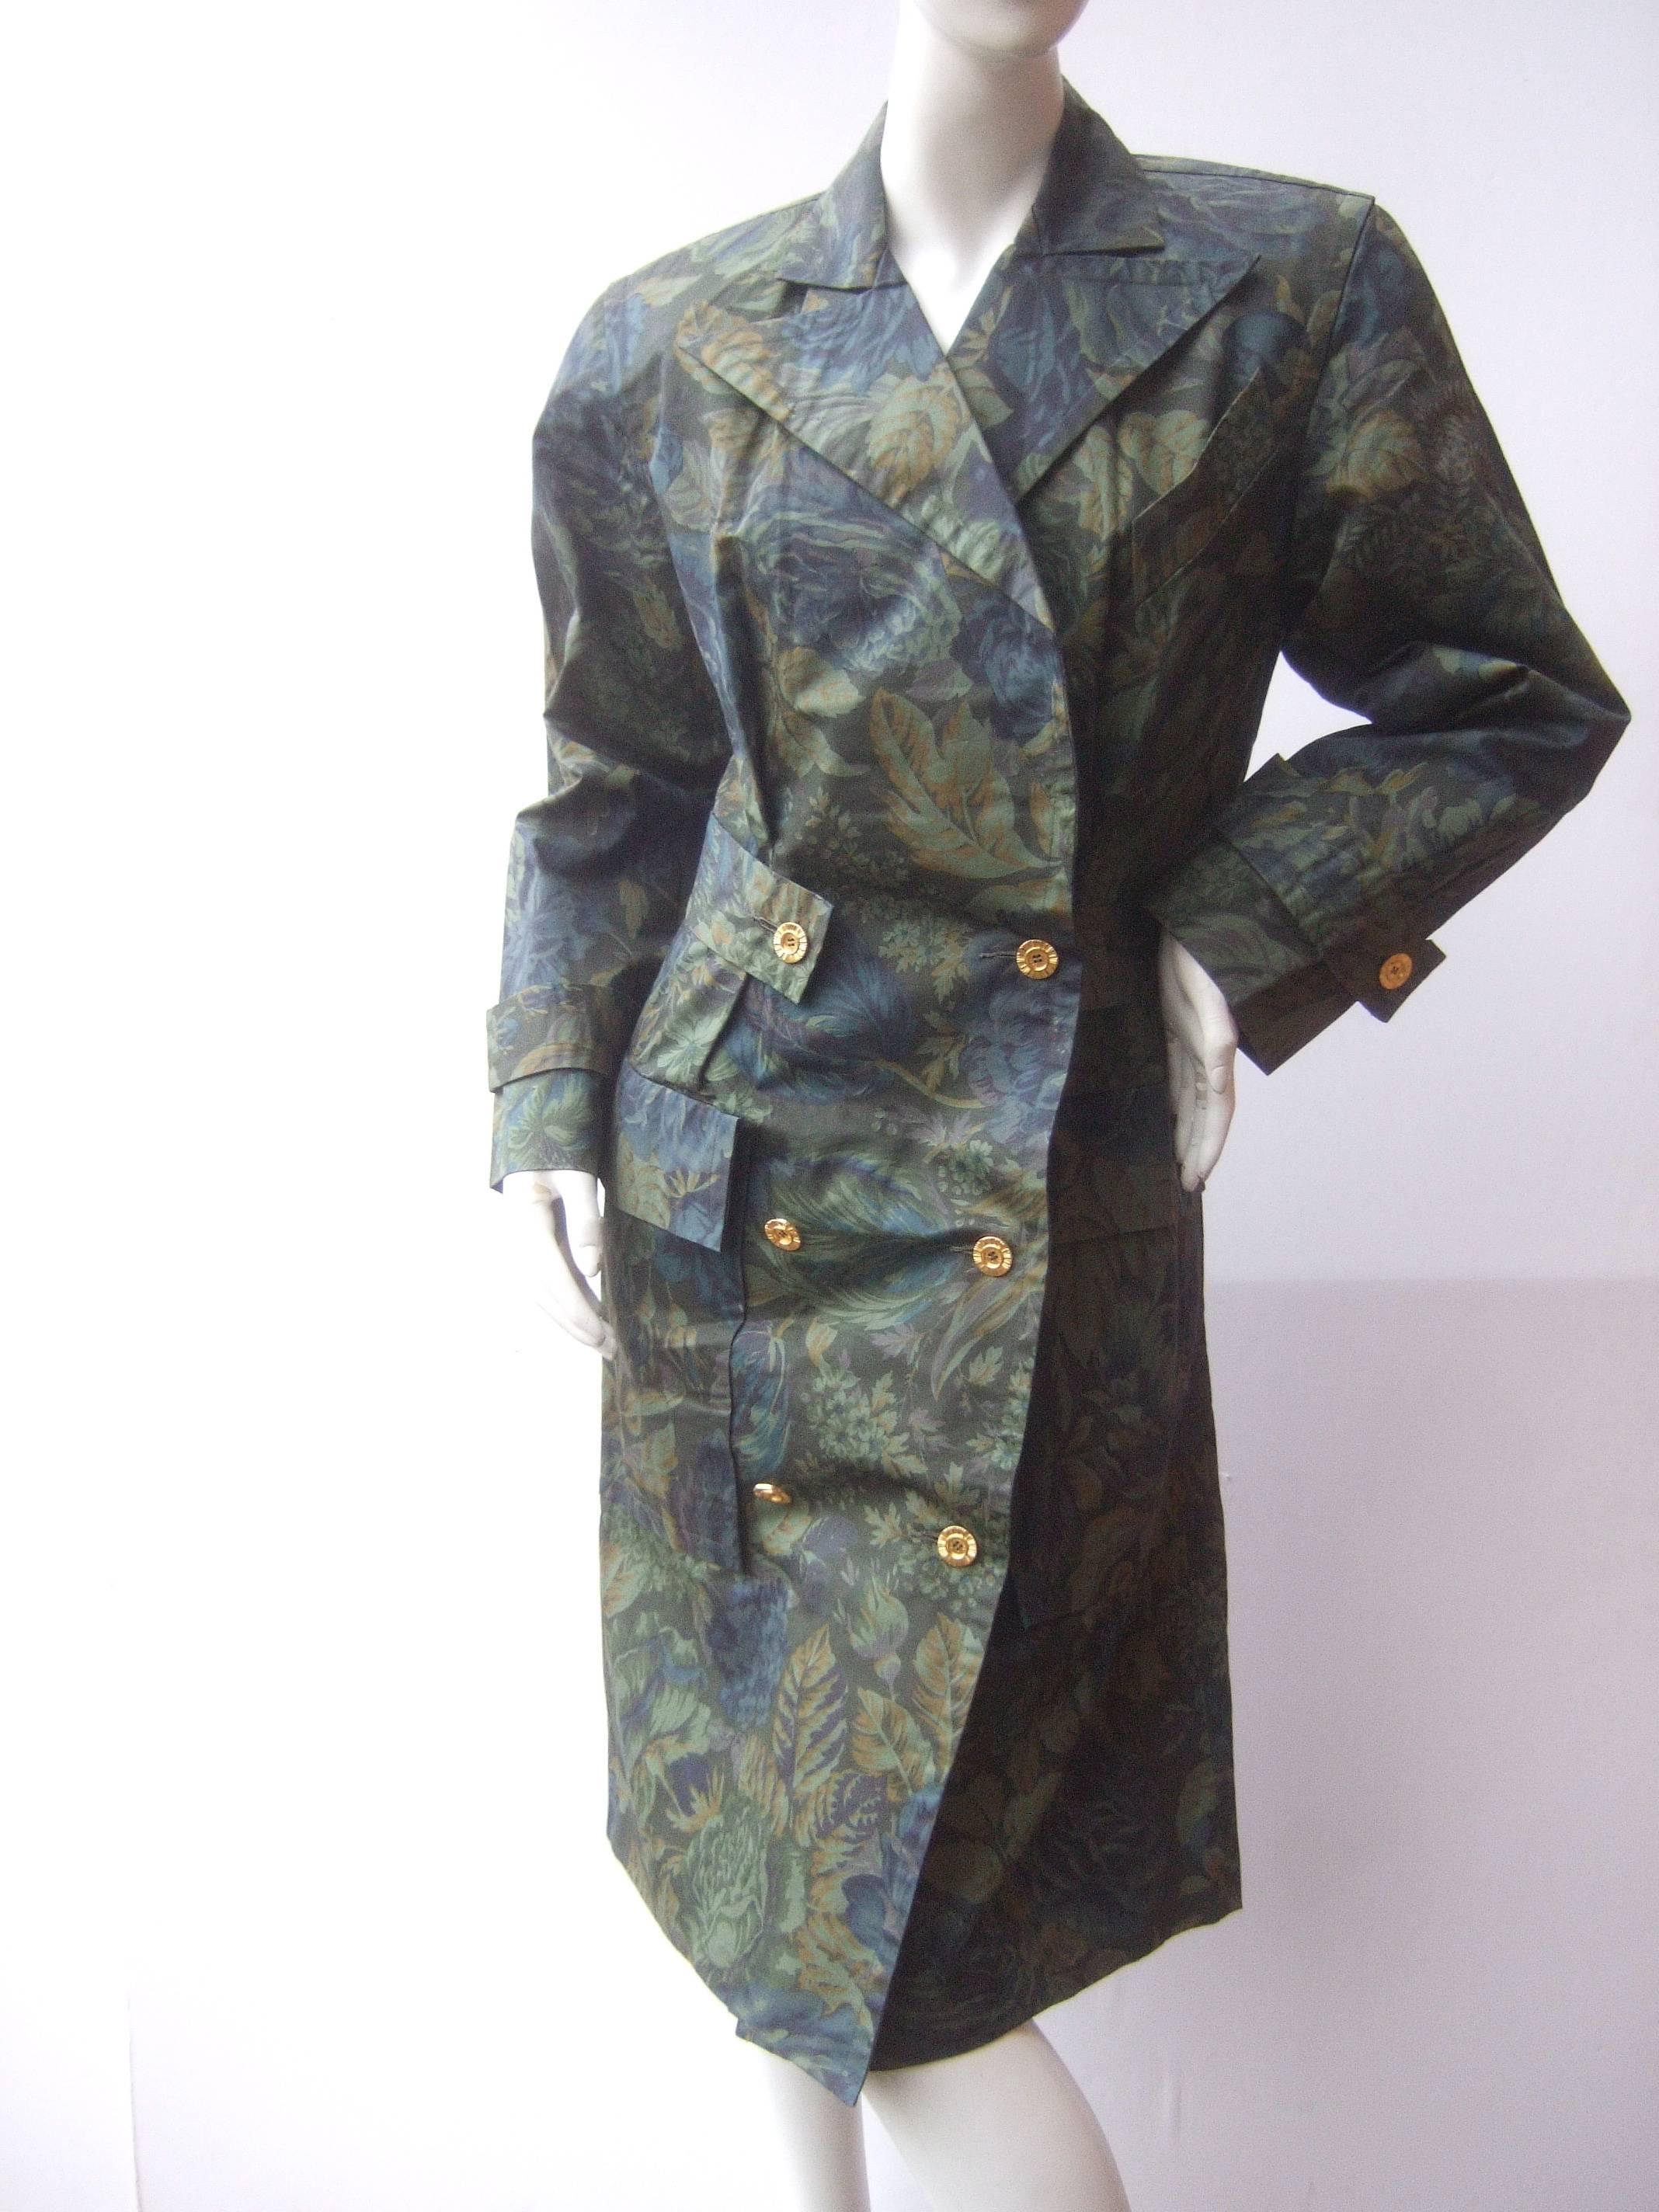 Balenciaga Paris trench-coat en coton fleuri poli
L'élégant manteau de créateur est illustré par un champ
de luxuriantes roses bleues / grises à imprimé floral 

La profusion de roses est entourée d'une discrète 
feuillage vert. Ce manteau chic